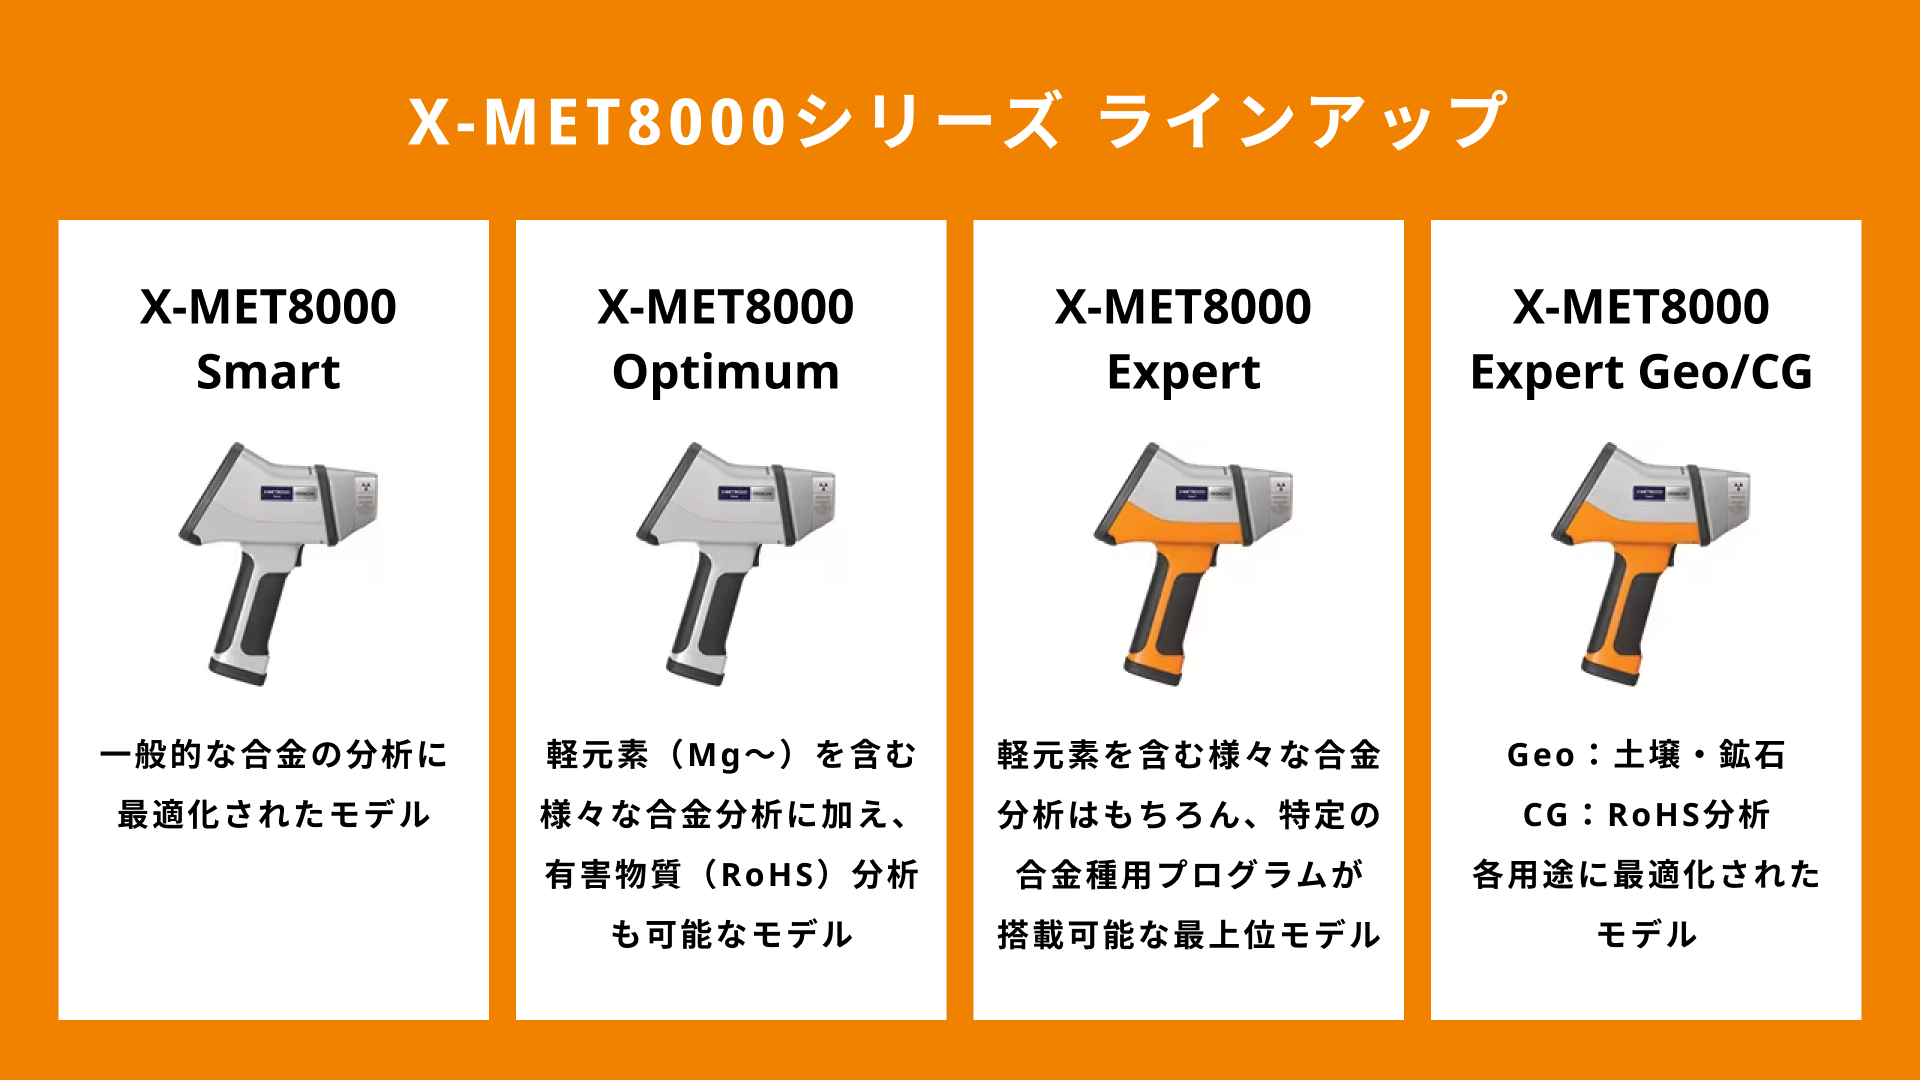 【スライド】片手で持てる 金属/樹脂 分析装置「X-MET8000 / VULCANシリーズ」